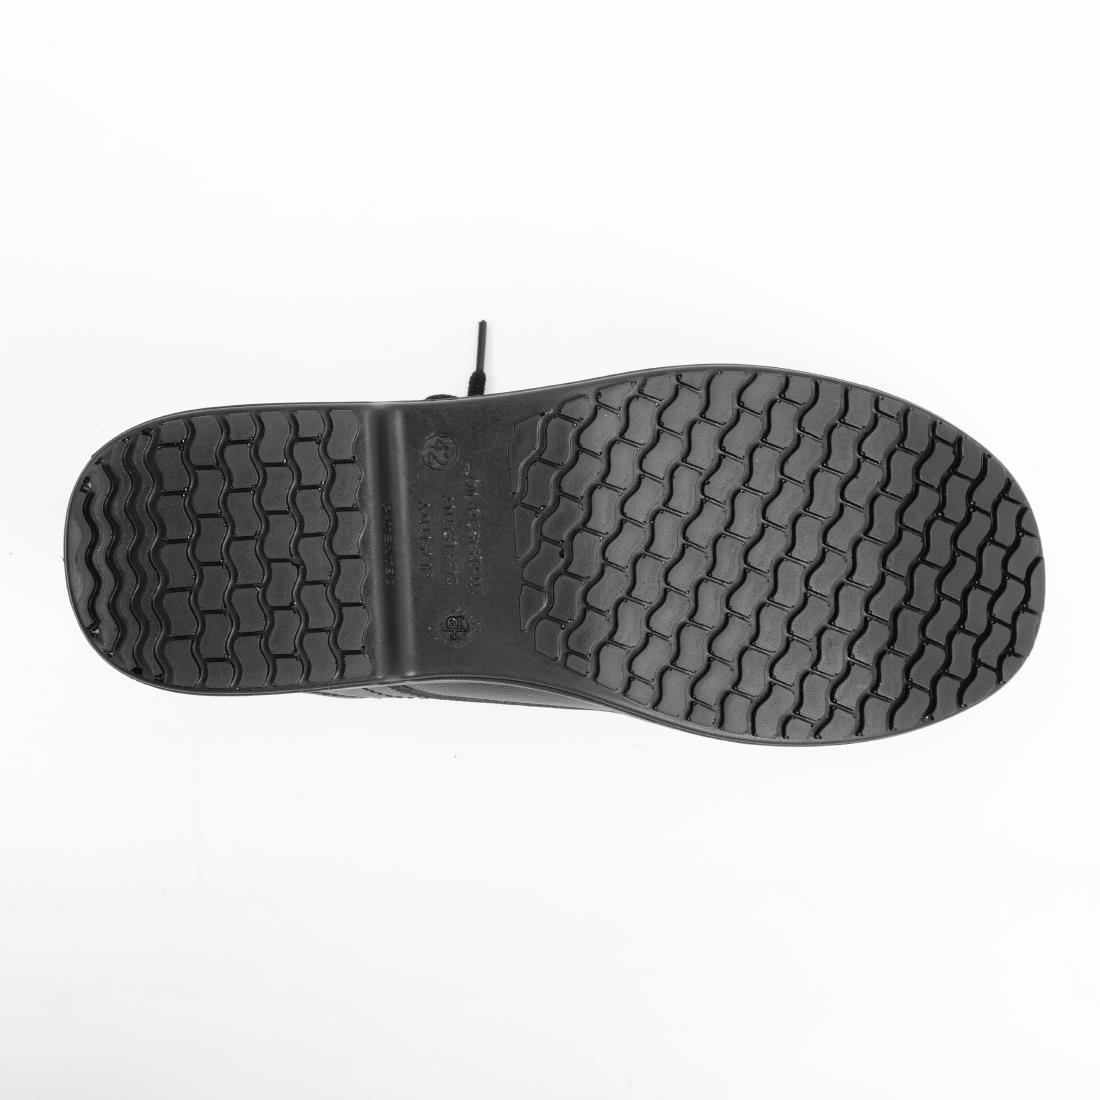 Slipbuster Basic Toe Cap Safety Shoes Black 45 - BB497-45  - 2